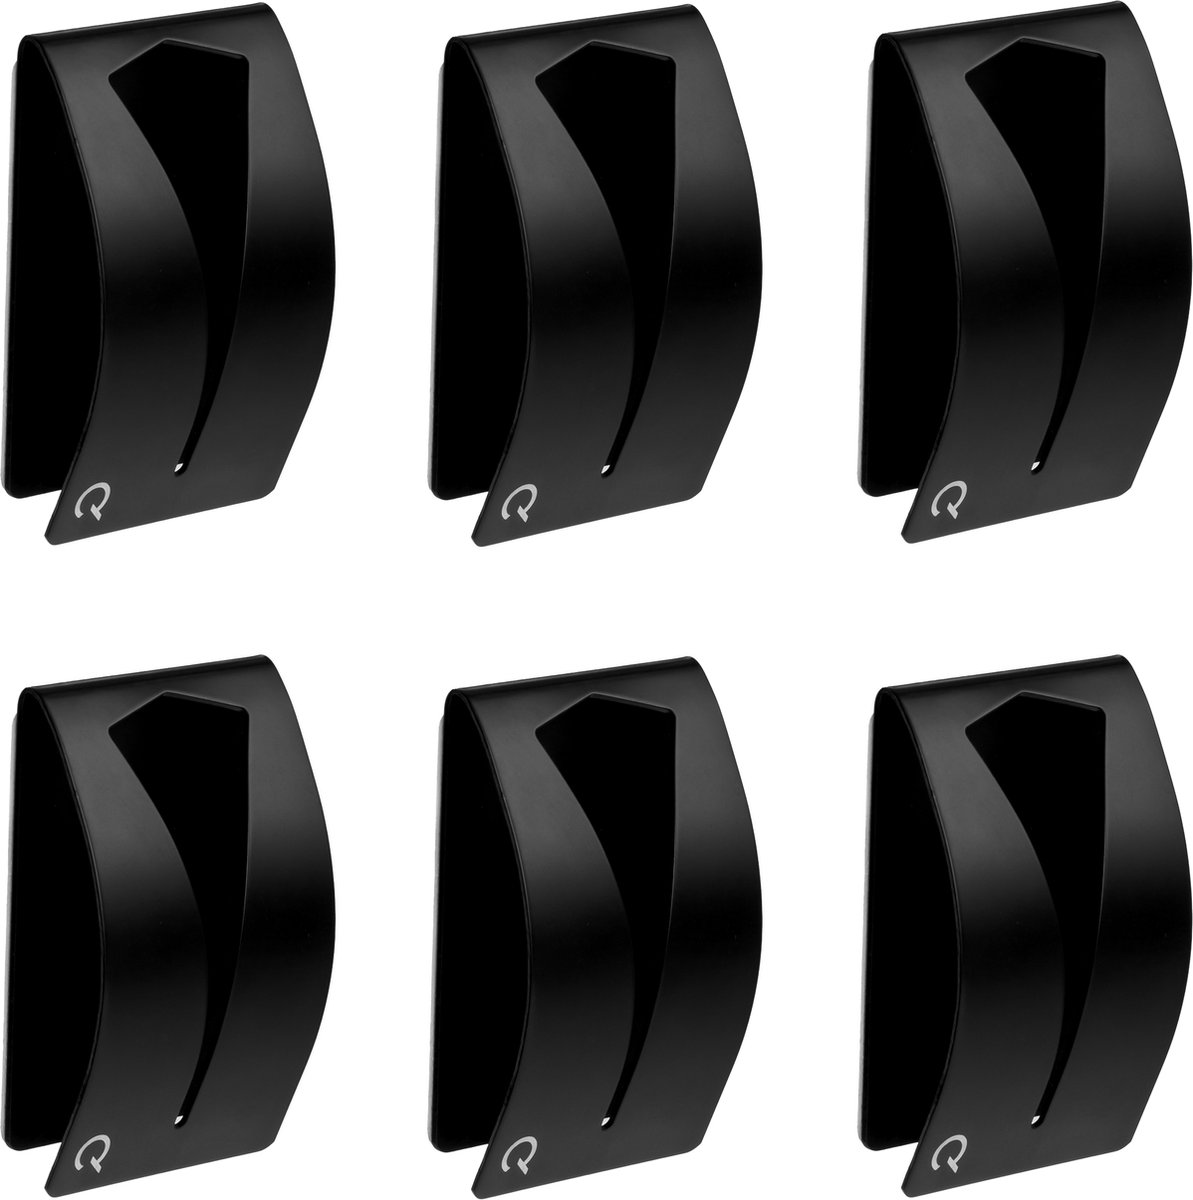 QUVIO Handdoekhouder - RVS - Set van 6 - Met plakstrip - Handdoekenrek - Badkamer - Handdoekhaakjes - Wandhaak - Handdoekhanger - Zwart - 2,5 x 5 x 8 cm